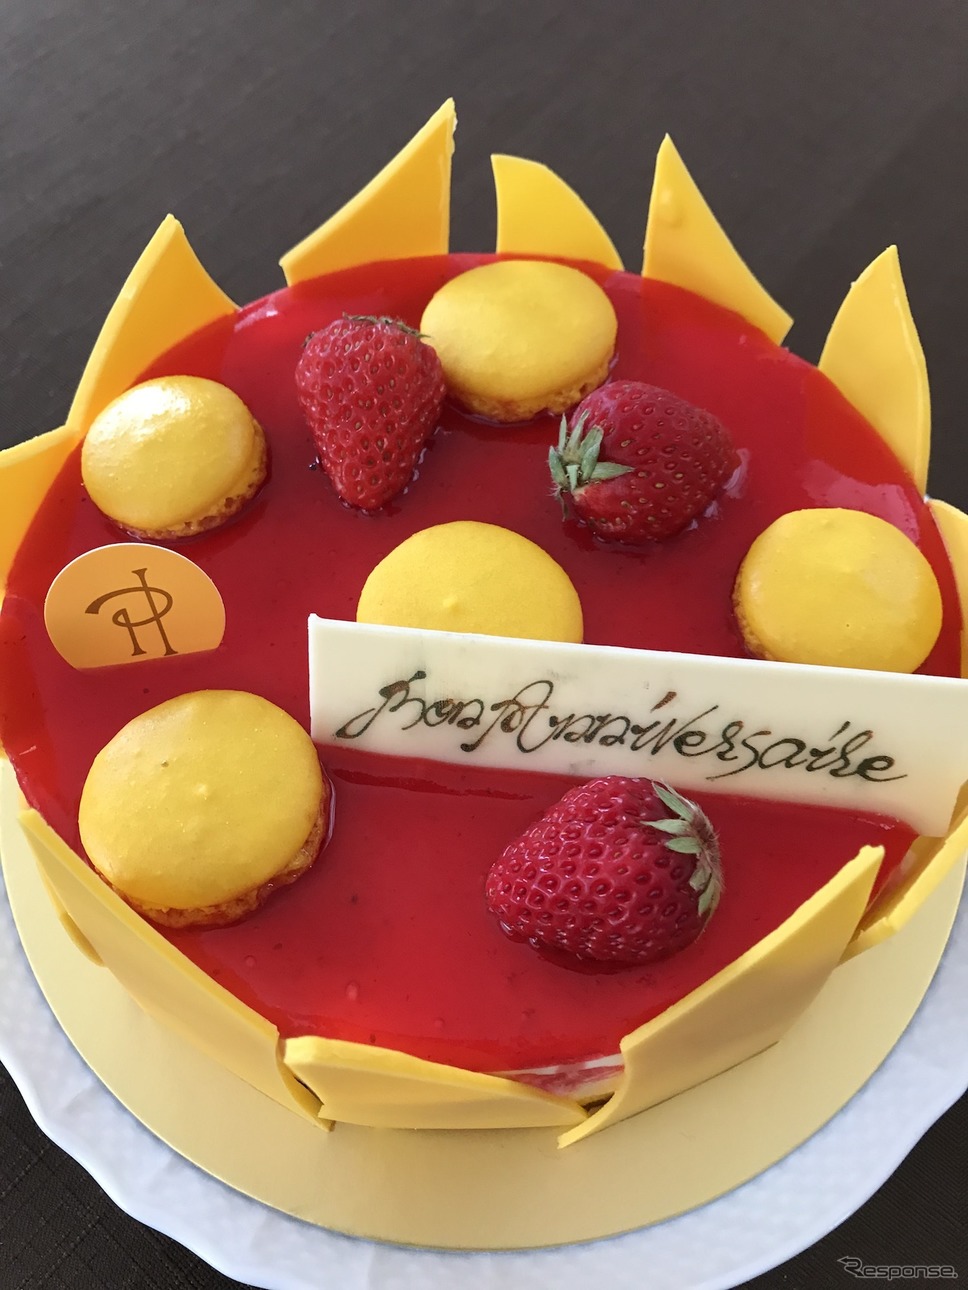 グループPSAジャパンがサービスする「おうちエルメ」で届いたケーキ《撮影 岩貞るみこ》